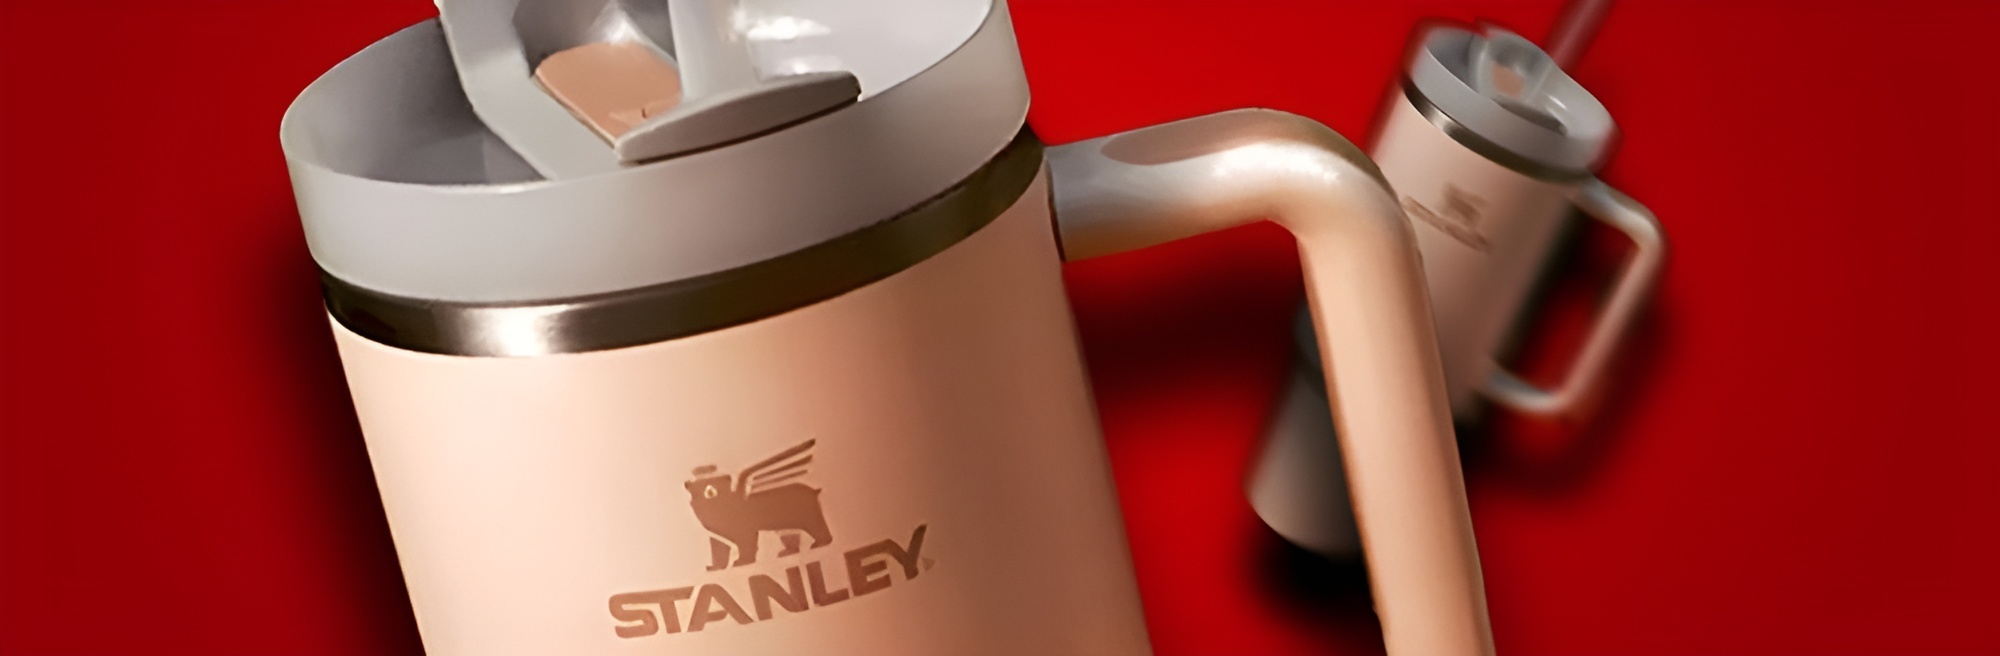 História das marcas: Stanley - A marca que revolucionou as bebidas